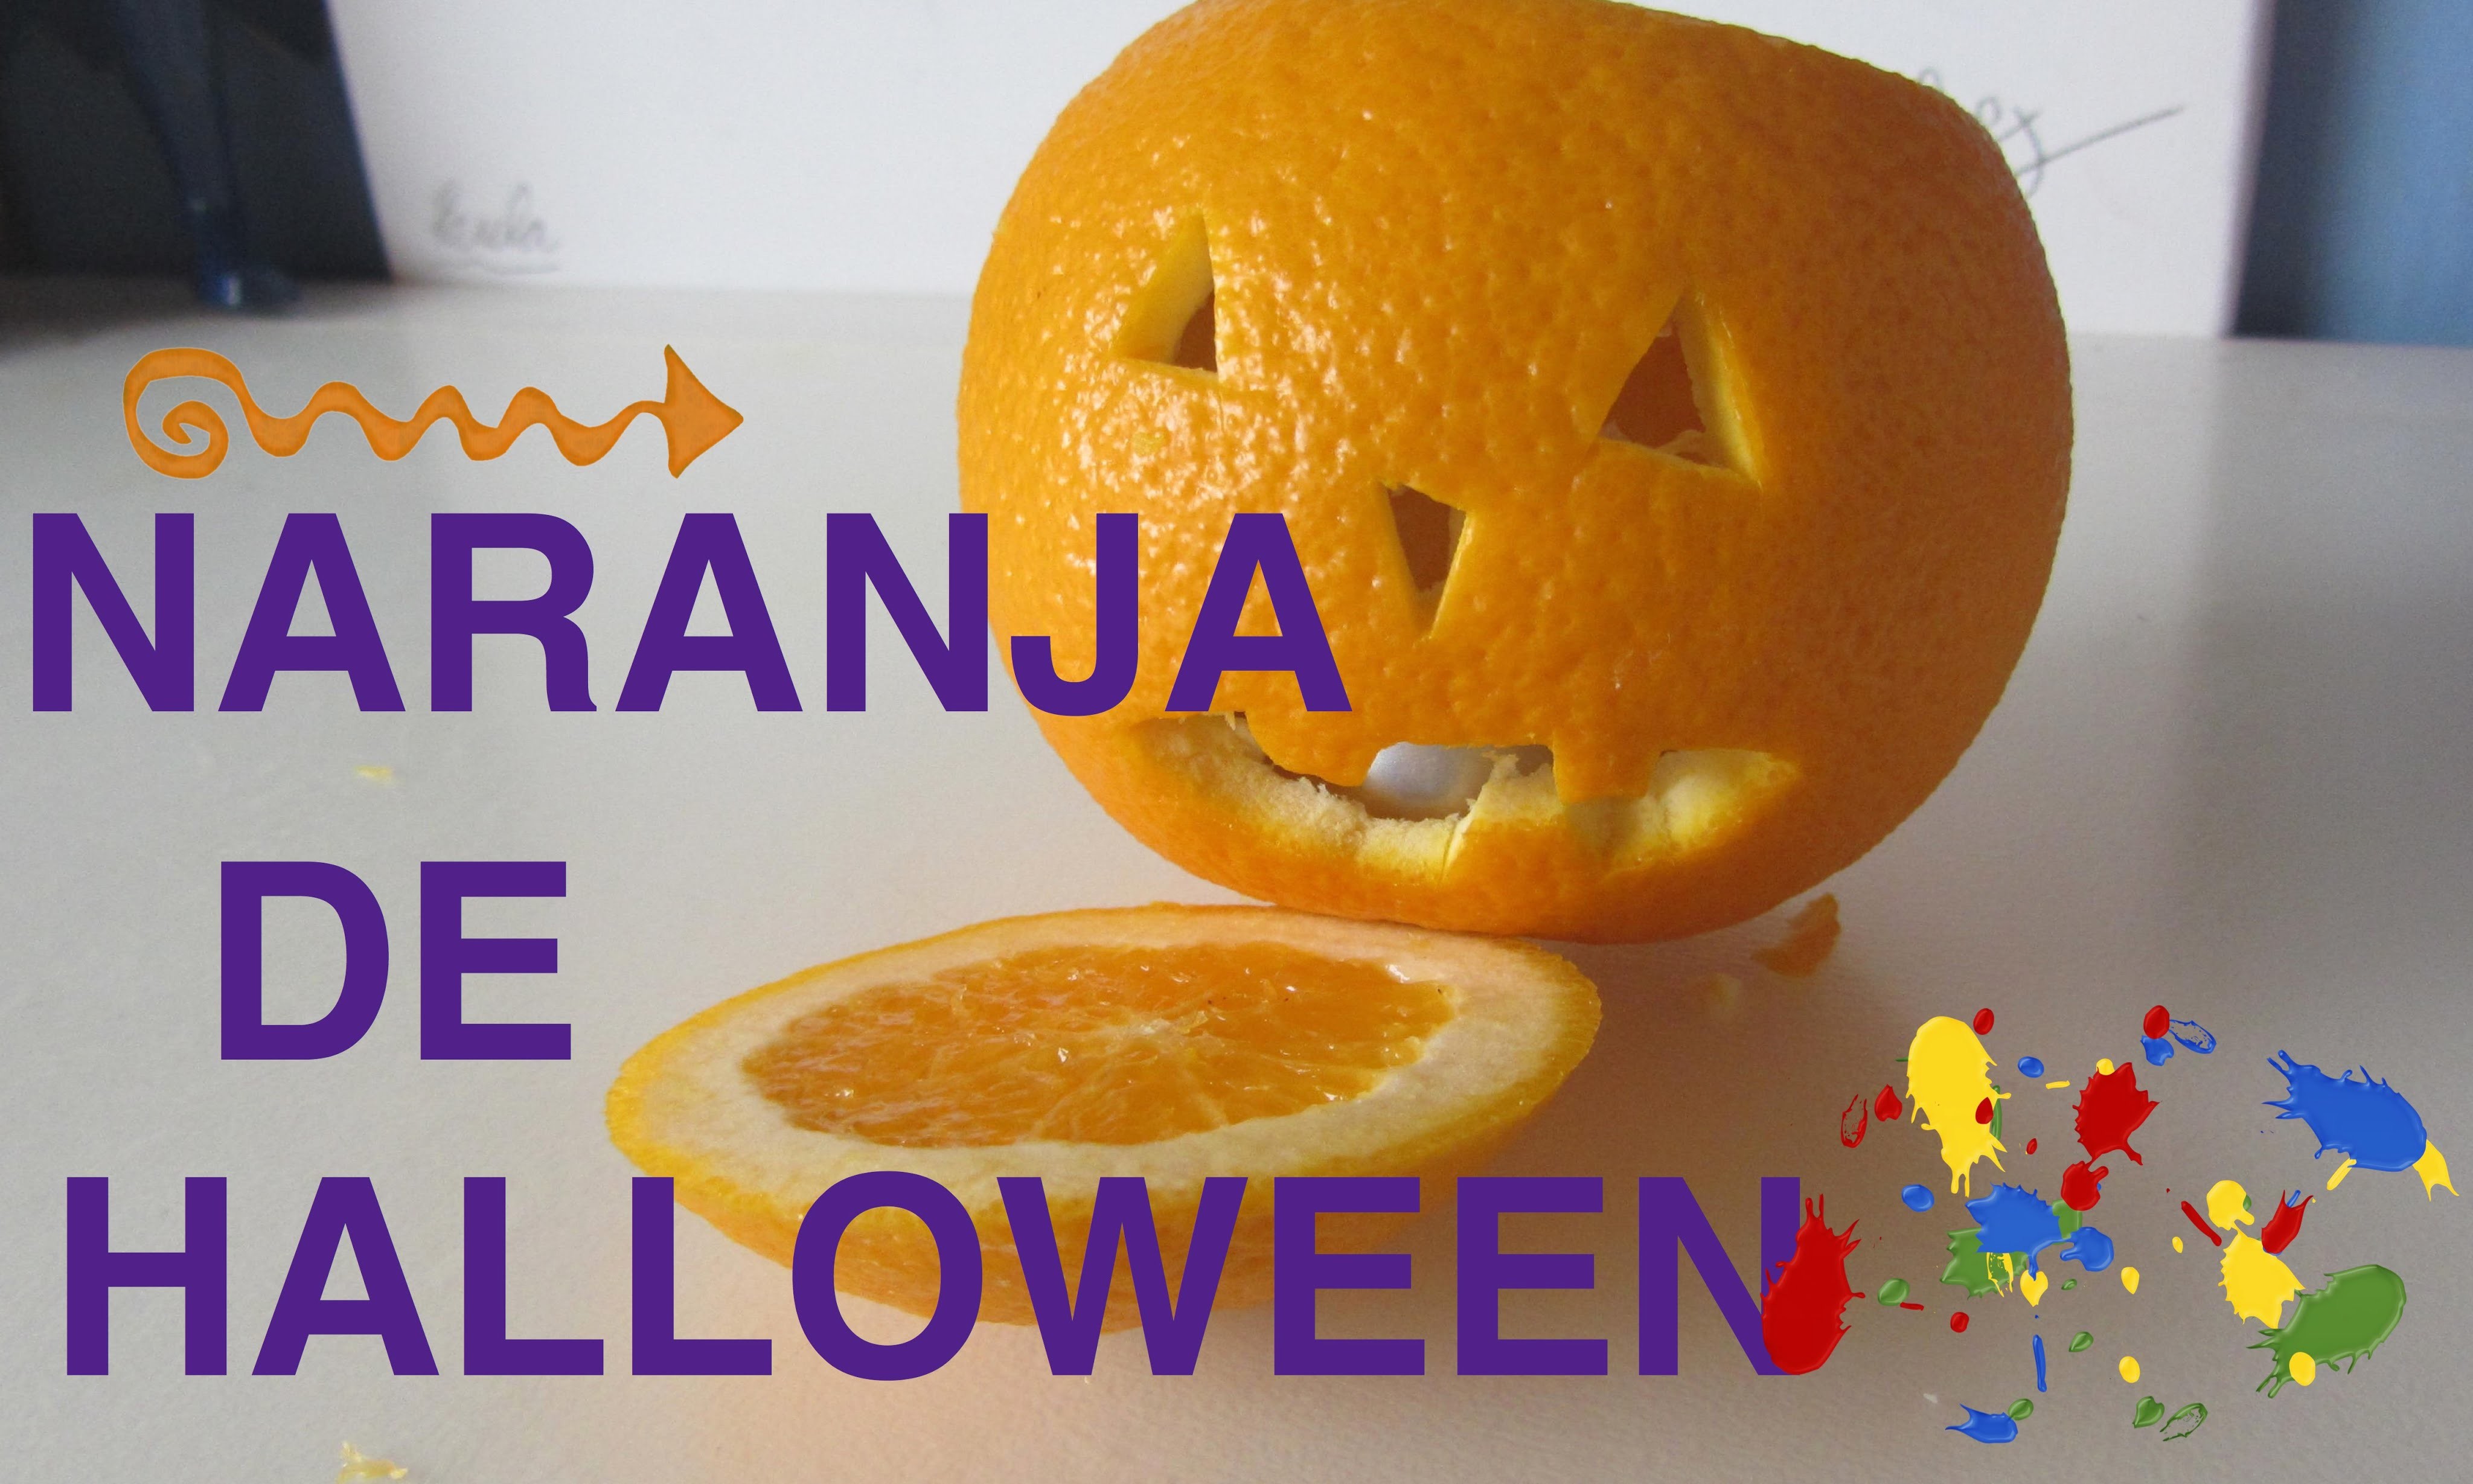 Naranja de halloween